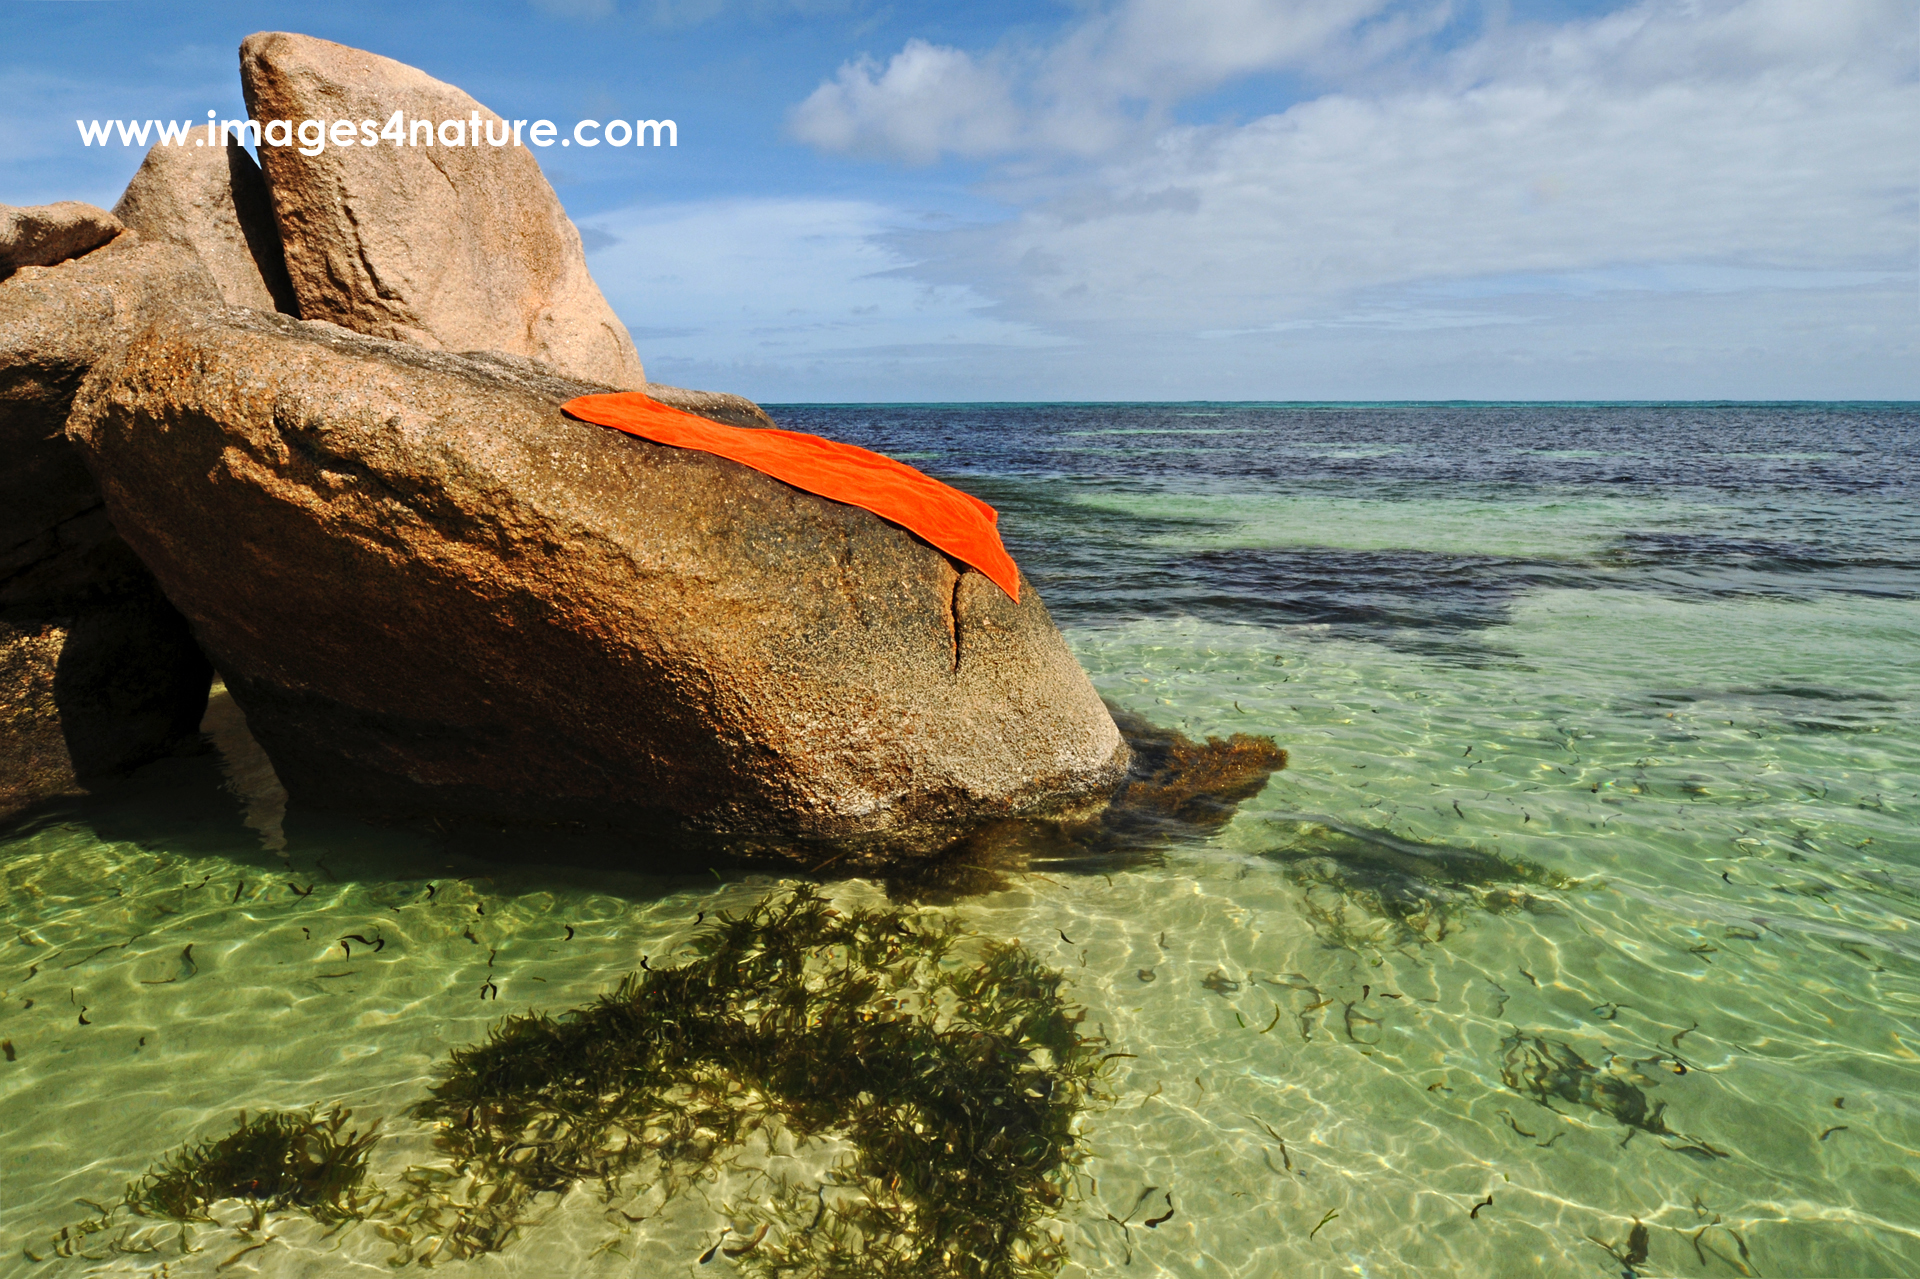 One orange beach towel lying on granite rock in tropical waters